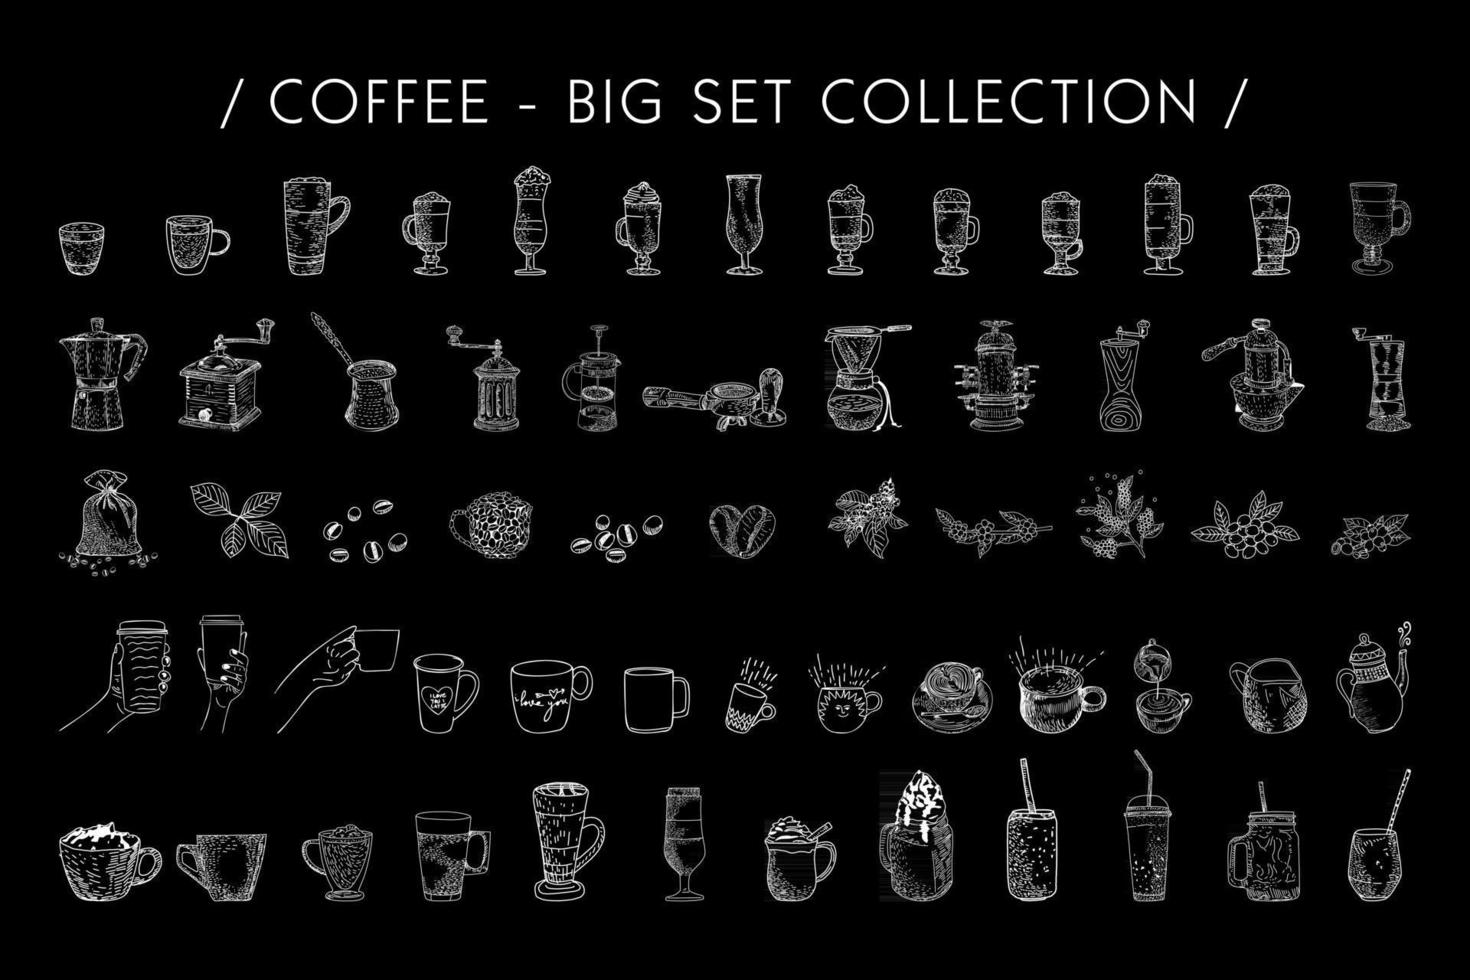 illustrazione grafica vettoriale disegnata a mano set da caffè